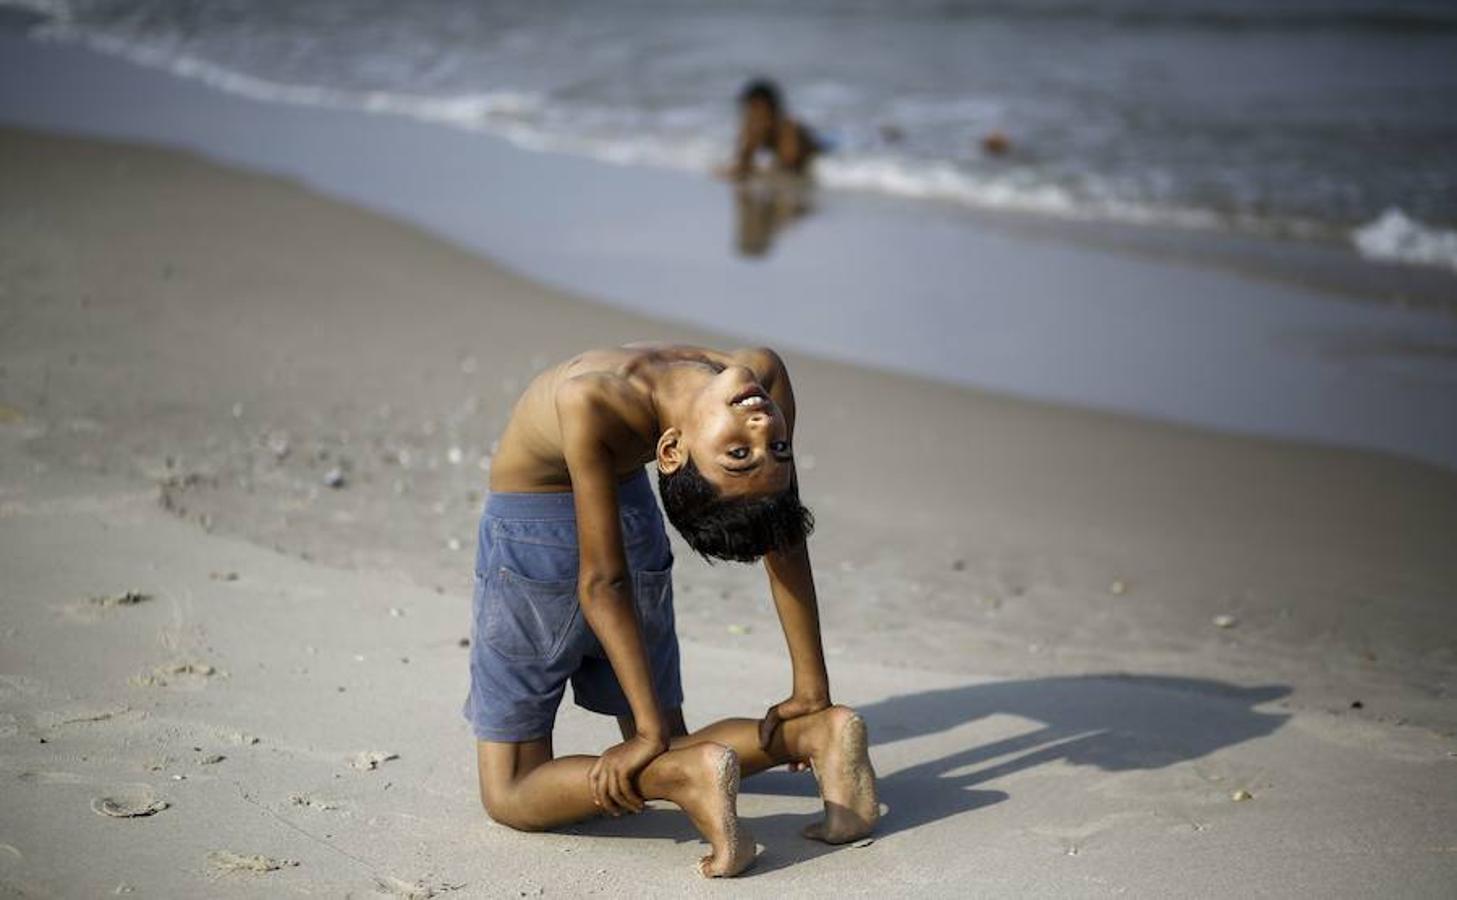 Yousef Al-Bahtini, un niño palestino de 12 años, intentará conseguir el récord Guinness World en velocidad recorriendo 20 metros contorsionado. Mientras tanto, muestra sus habilidades en la playa de la ciudad de Gaza. Al-Bahtini actualmente espera el permiso para viajar a Jordania, donde intentará superar el reto.